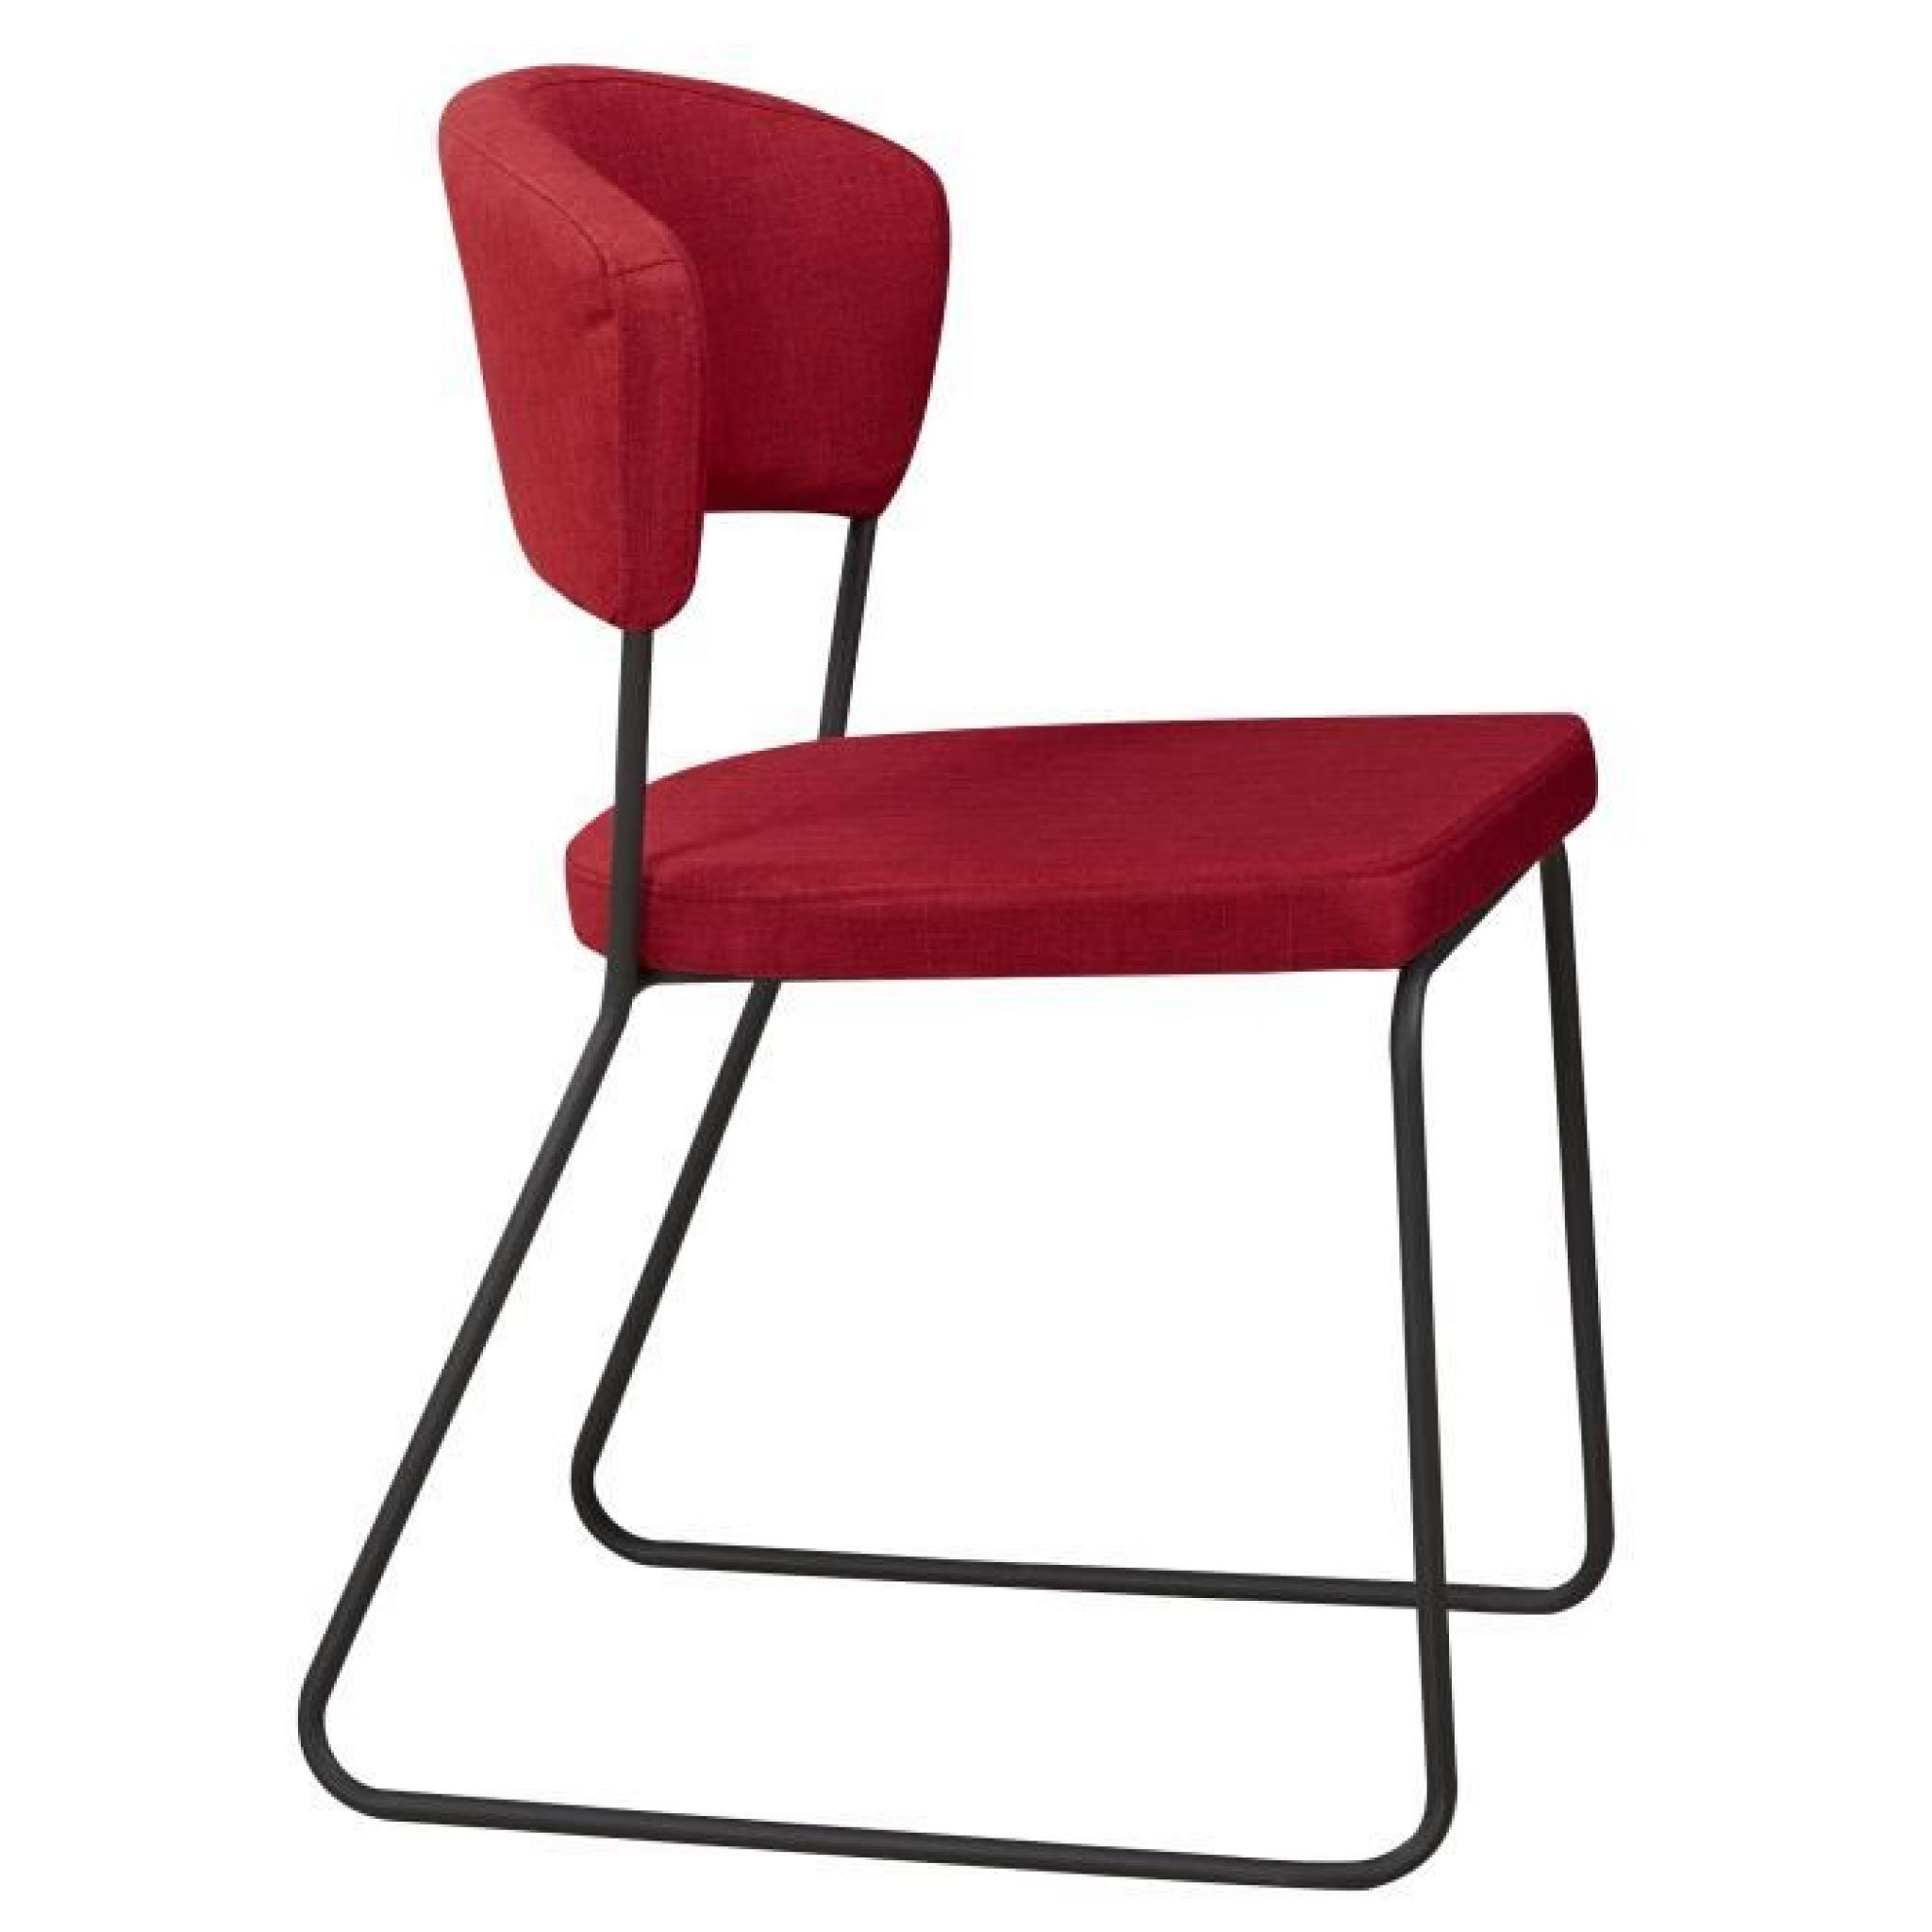 Chaise design minimaliste en tissus coloris rouge cinabre pas cher